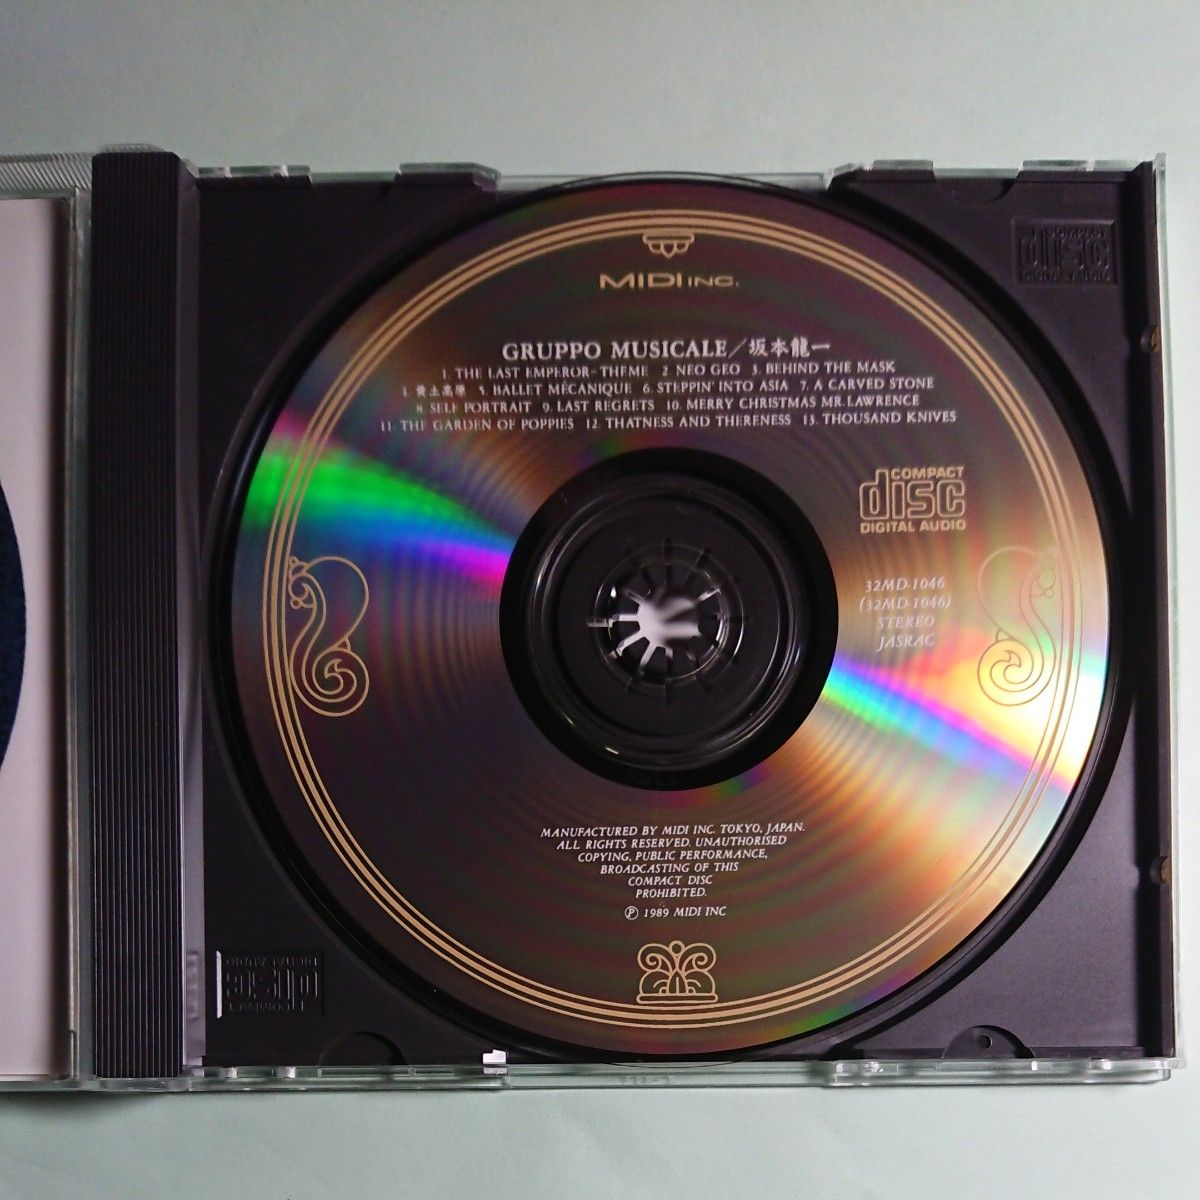 坂本龍一 グルッポ・ムジカーレ ベストアルバム CD 32MD-1046 ラスト・エンペラー 戦場のメリークリスマス 千のナイフ